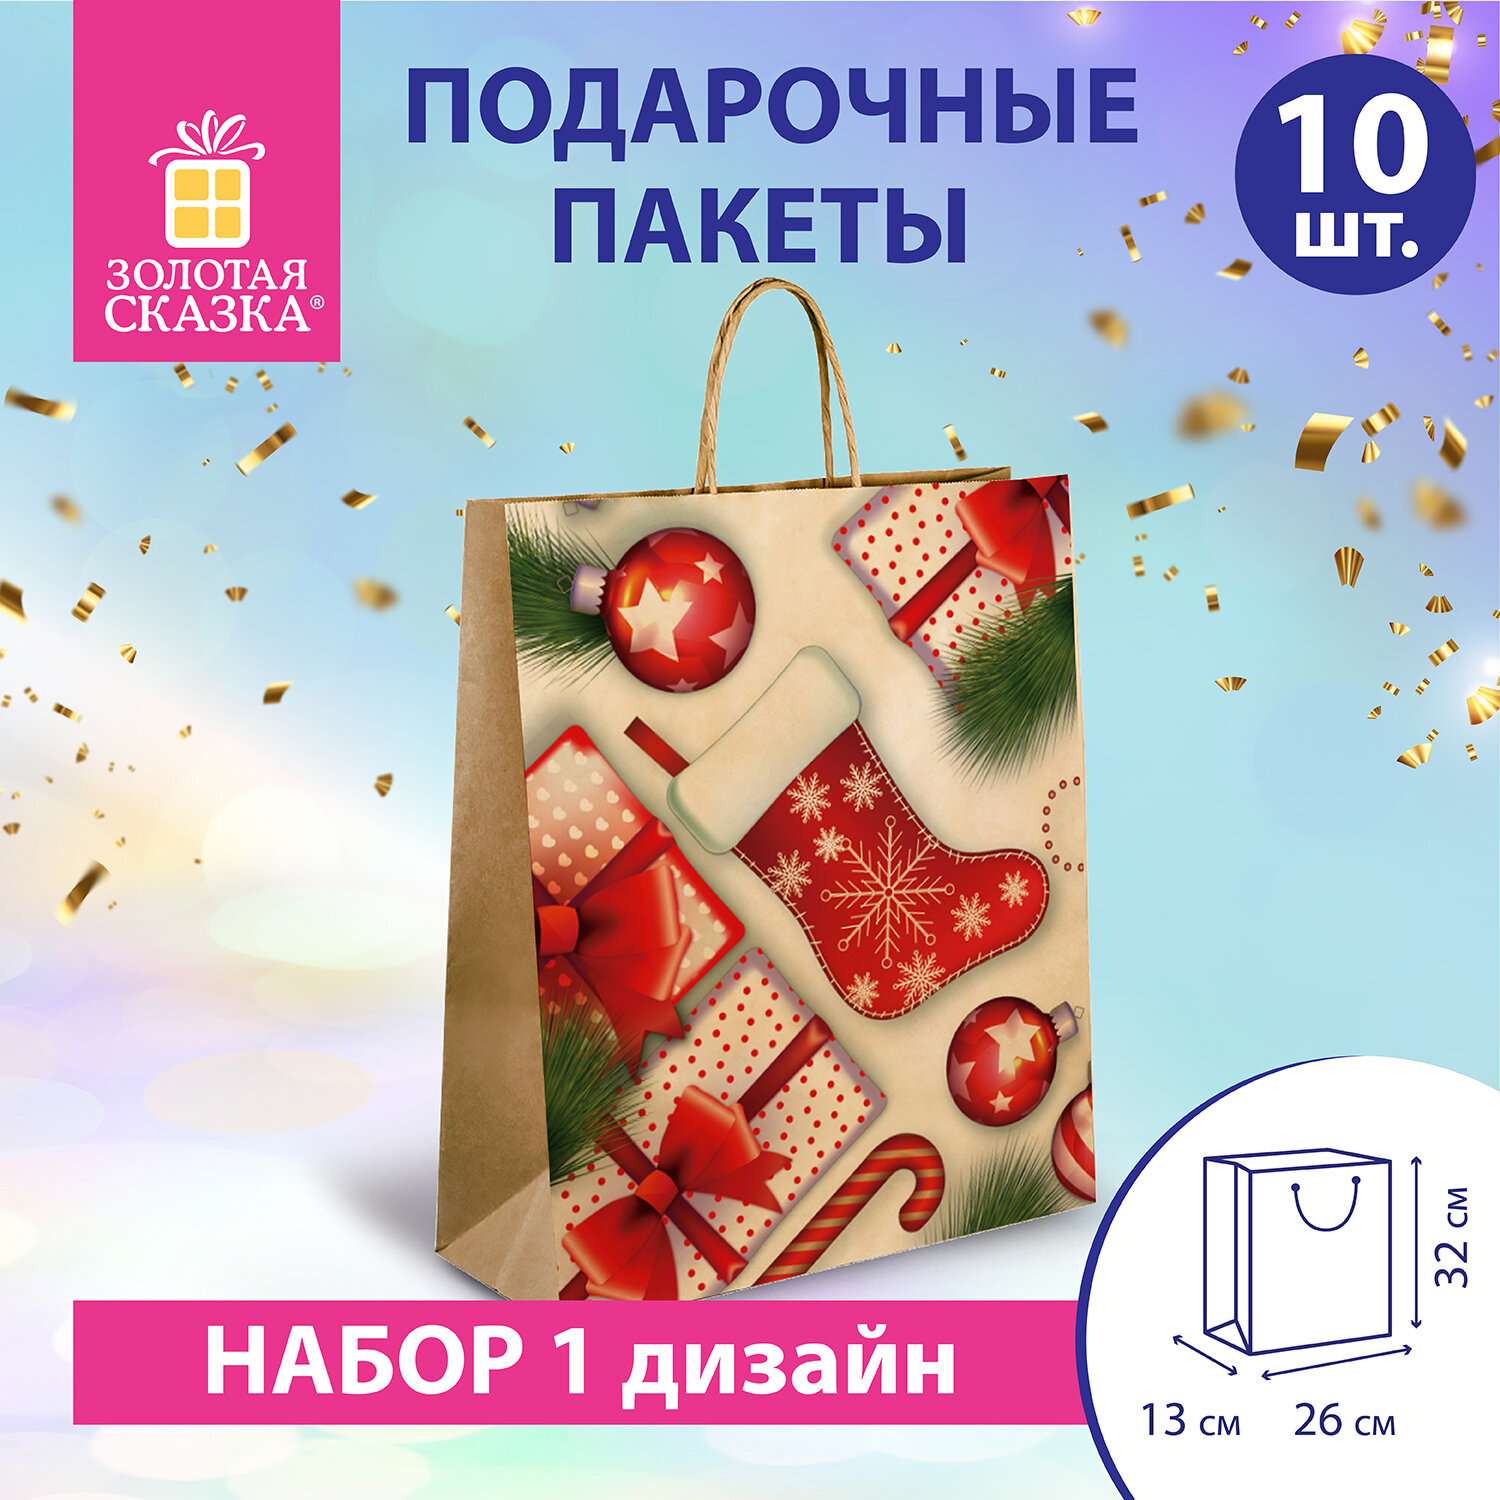 Подарочные пакеты Золотая сказка новогодние для упаковки подарков - фото 1